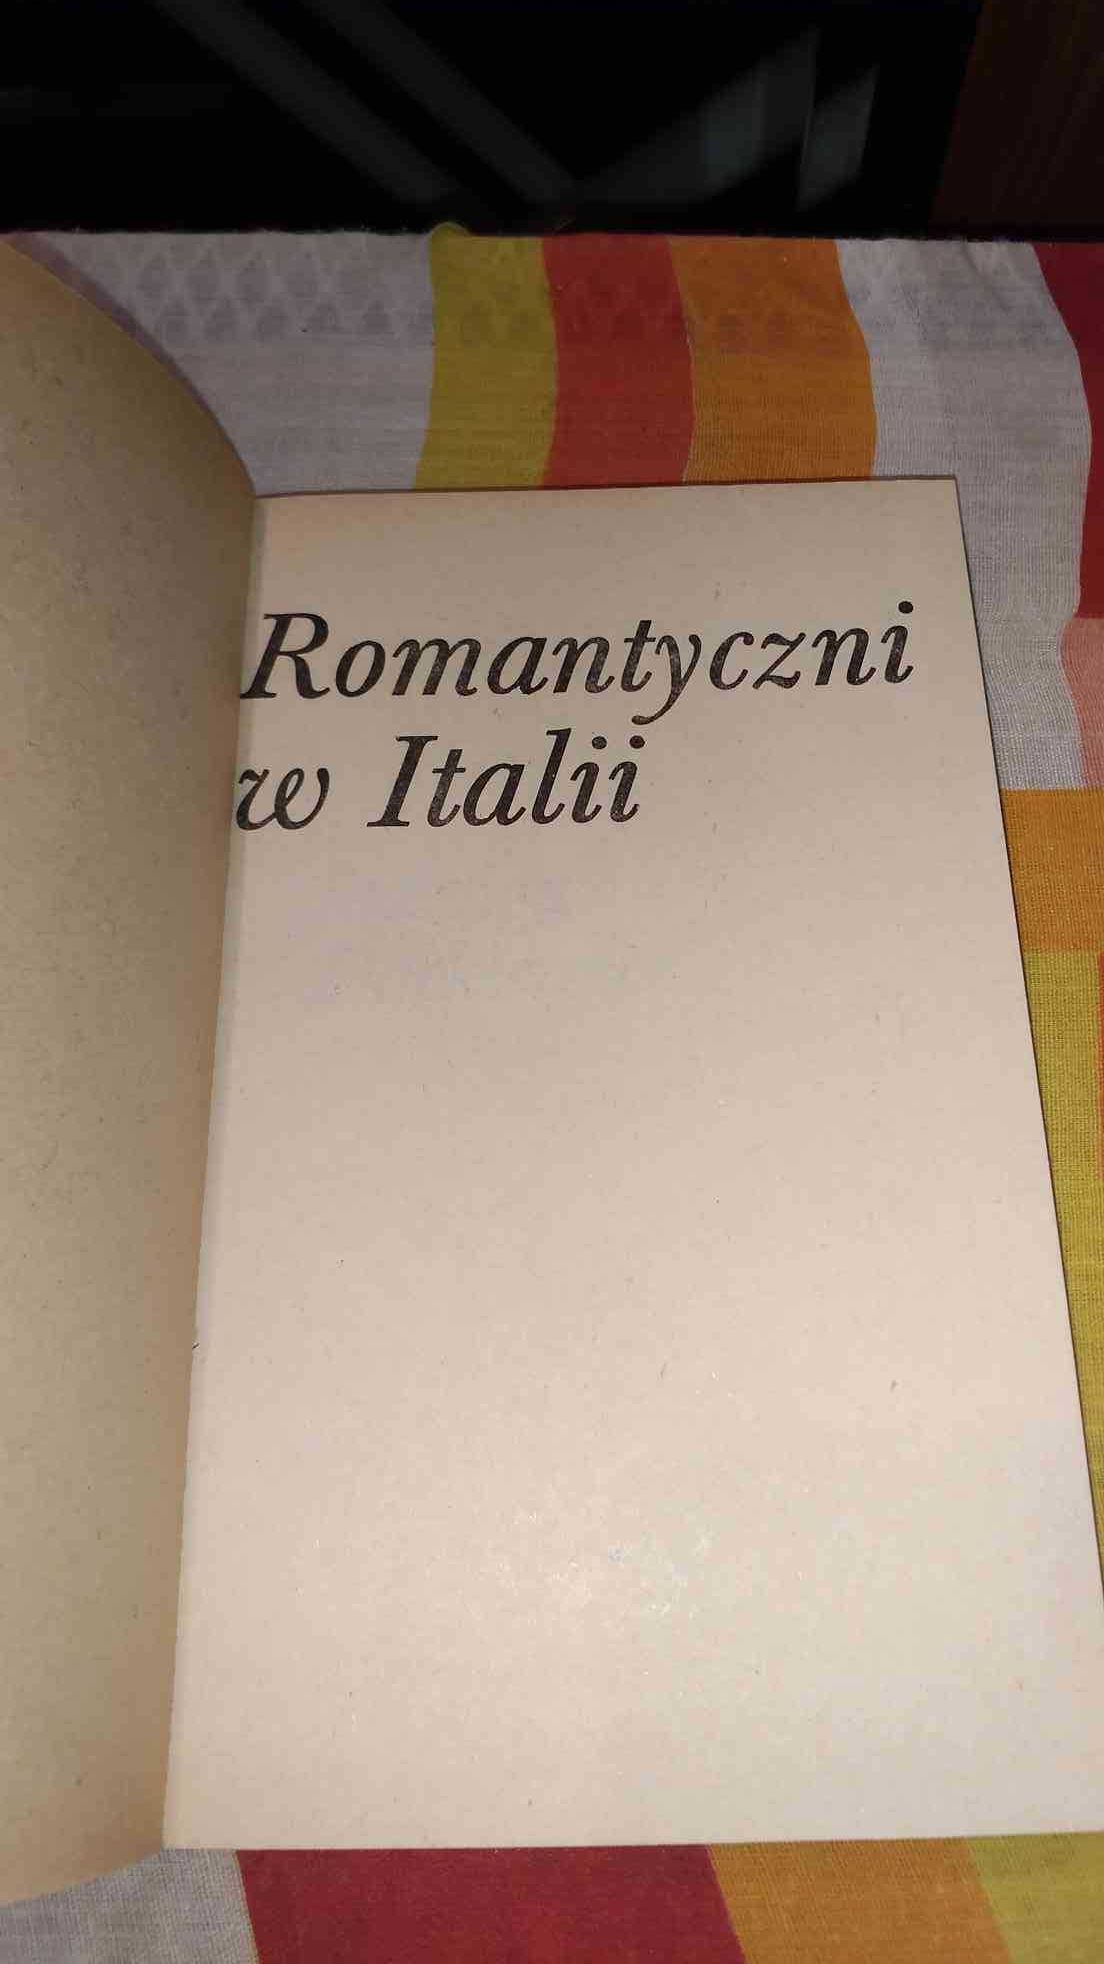 Romantyczni w Italii
Jadwiga Dackiewicz